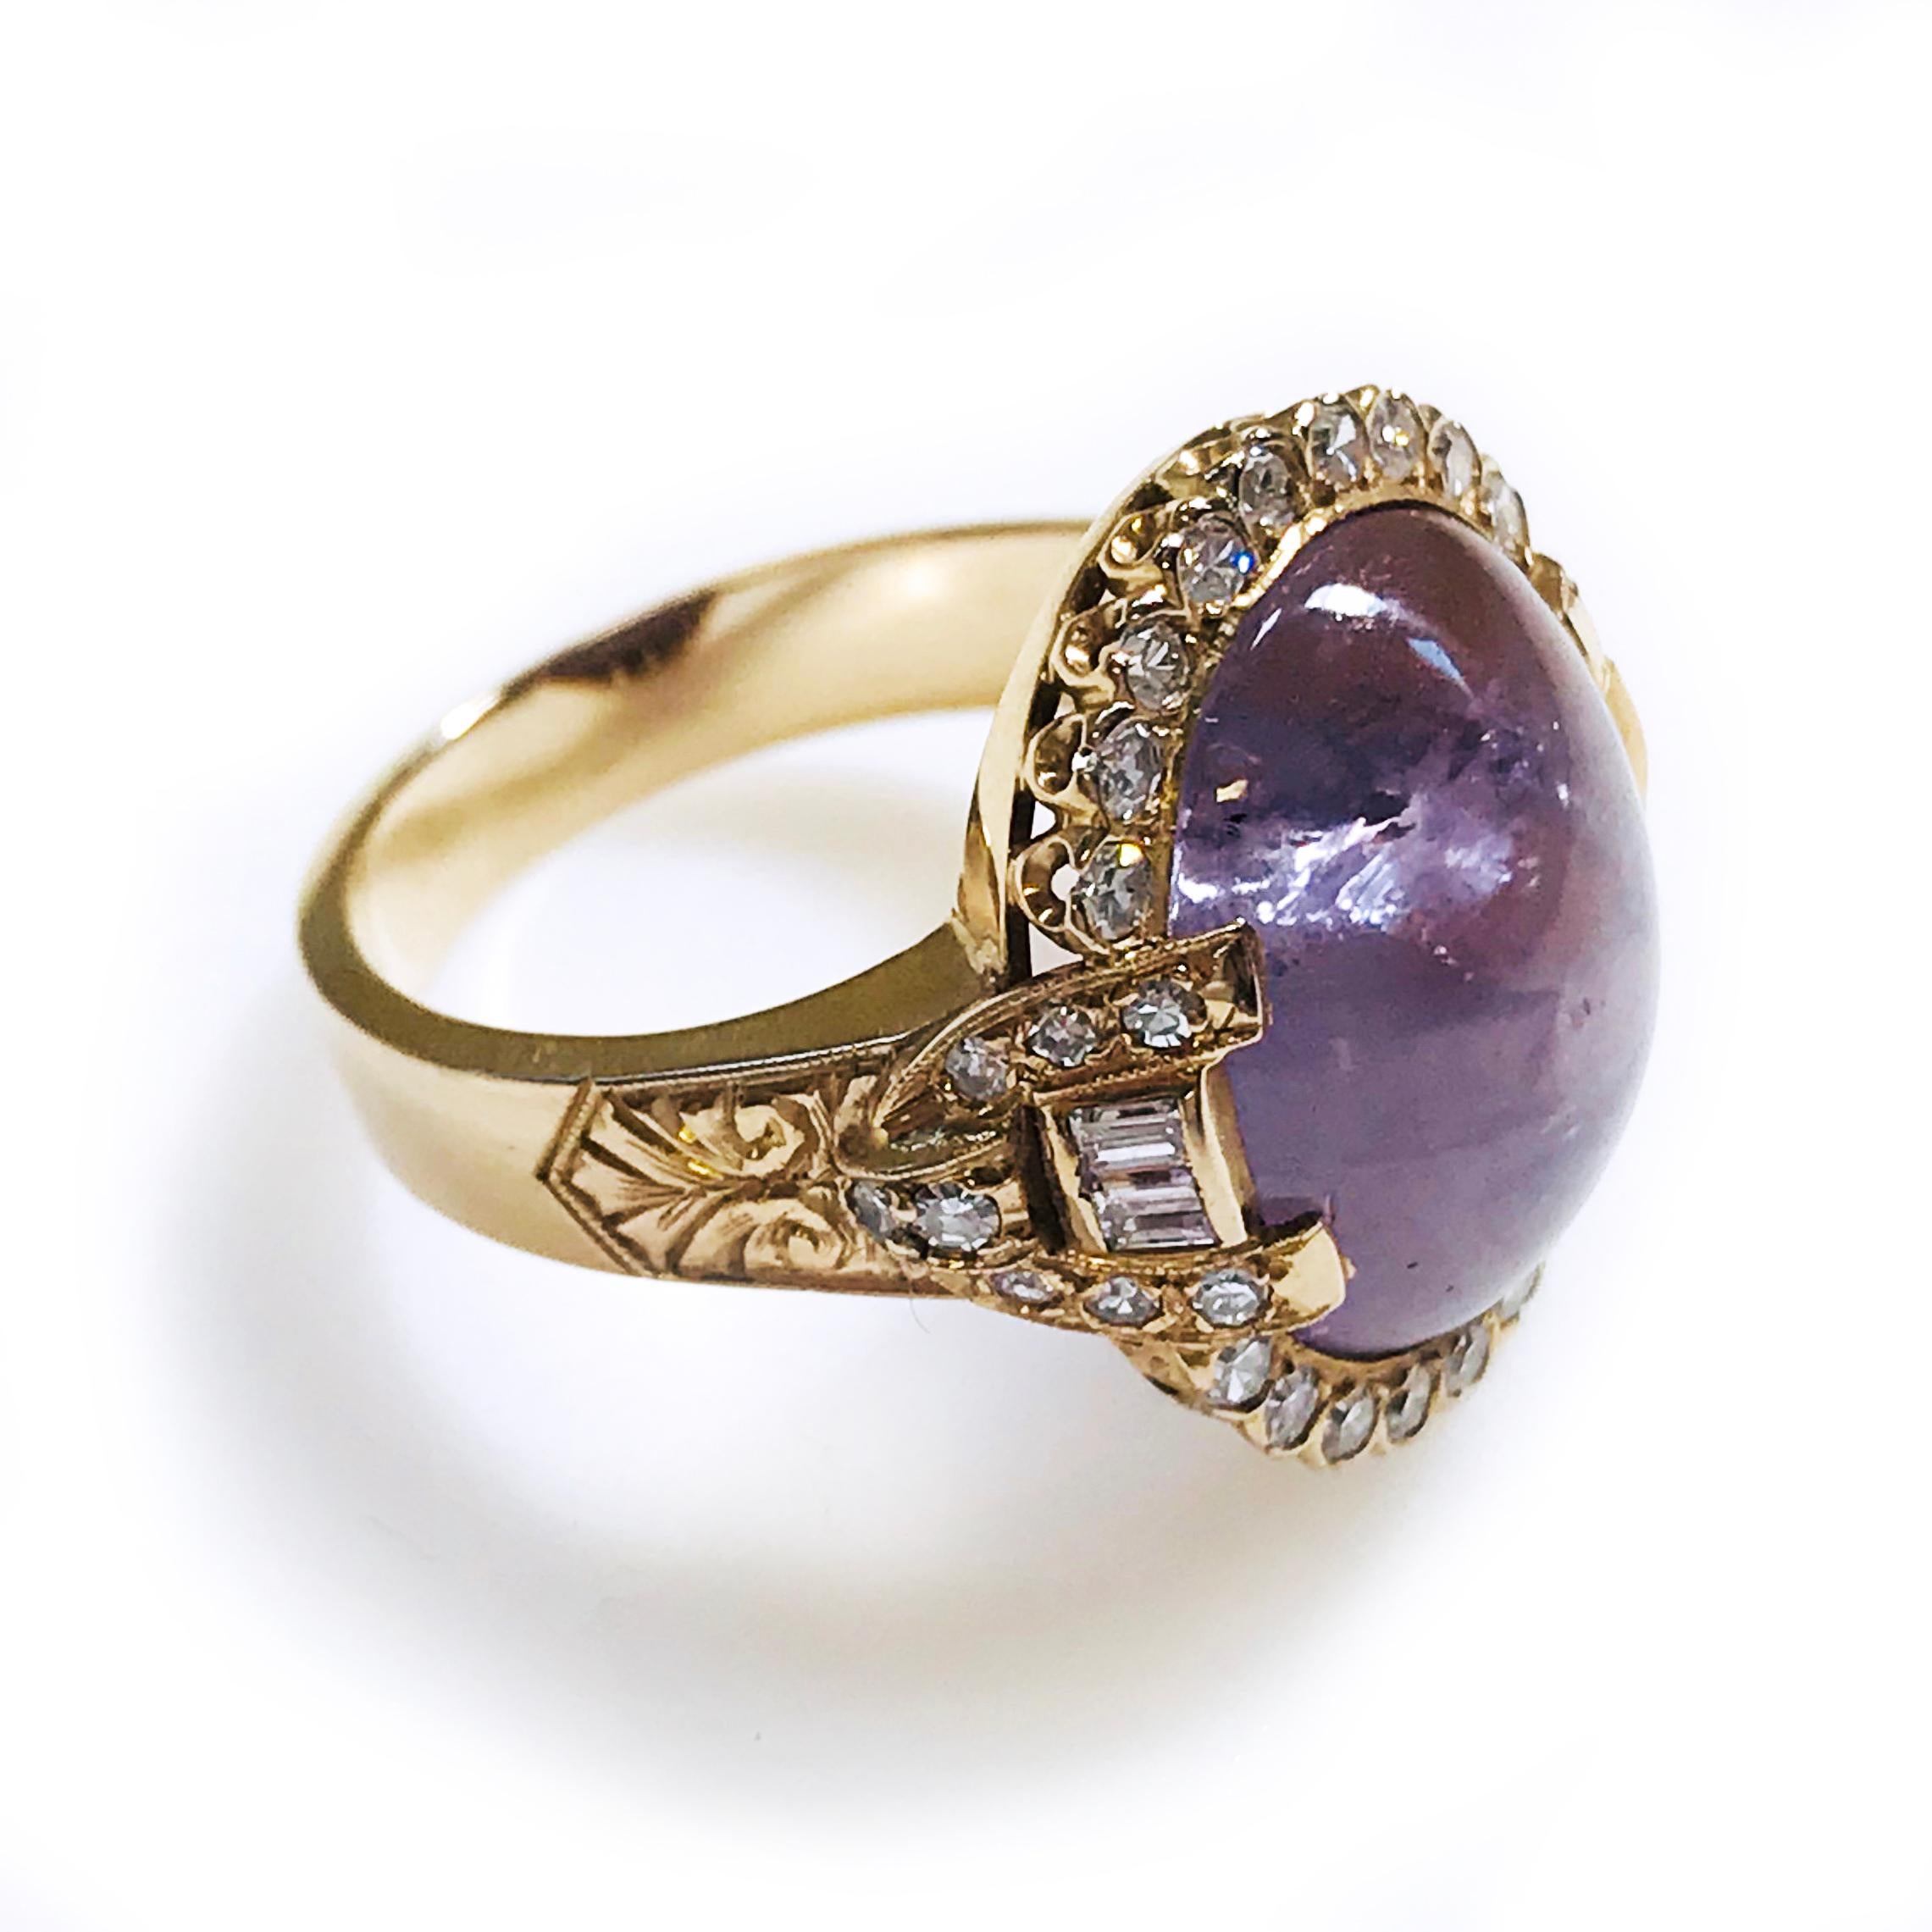 Elektronisch geprüfte 14k Rose Gold benutzerdefinierte gegossen lila Stern Saphir und Diamant-Ring. Der lilafarbene Sternsaphir ist in eine diamantbesetzte Lünette gefasst, die von diamantbesetzten Schultern gestützt und durch ein dreieinhalb